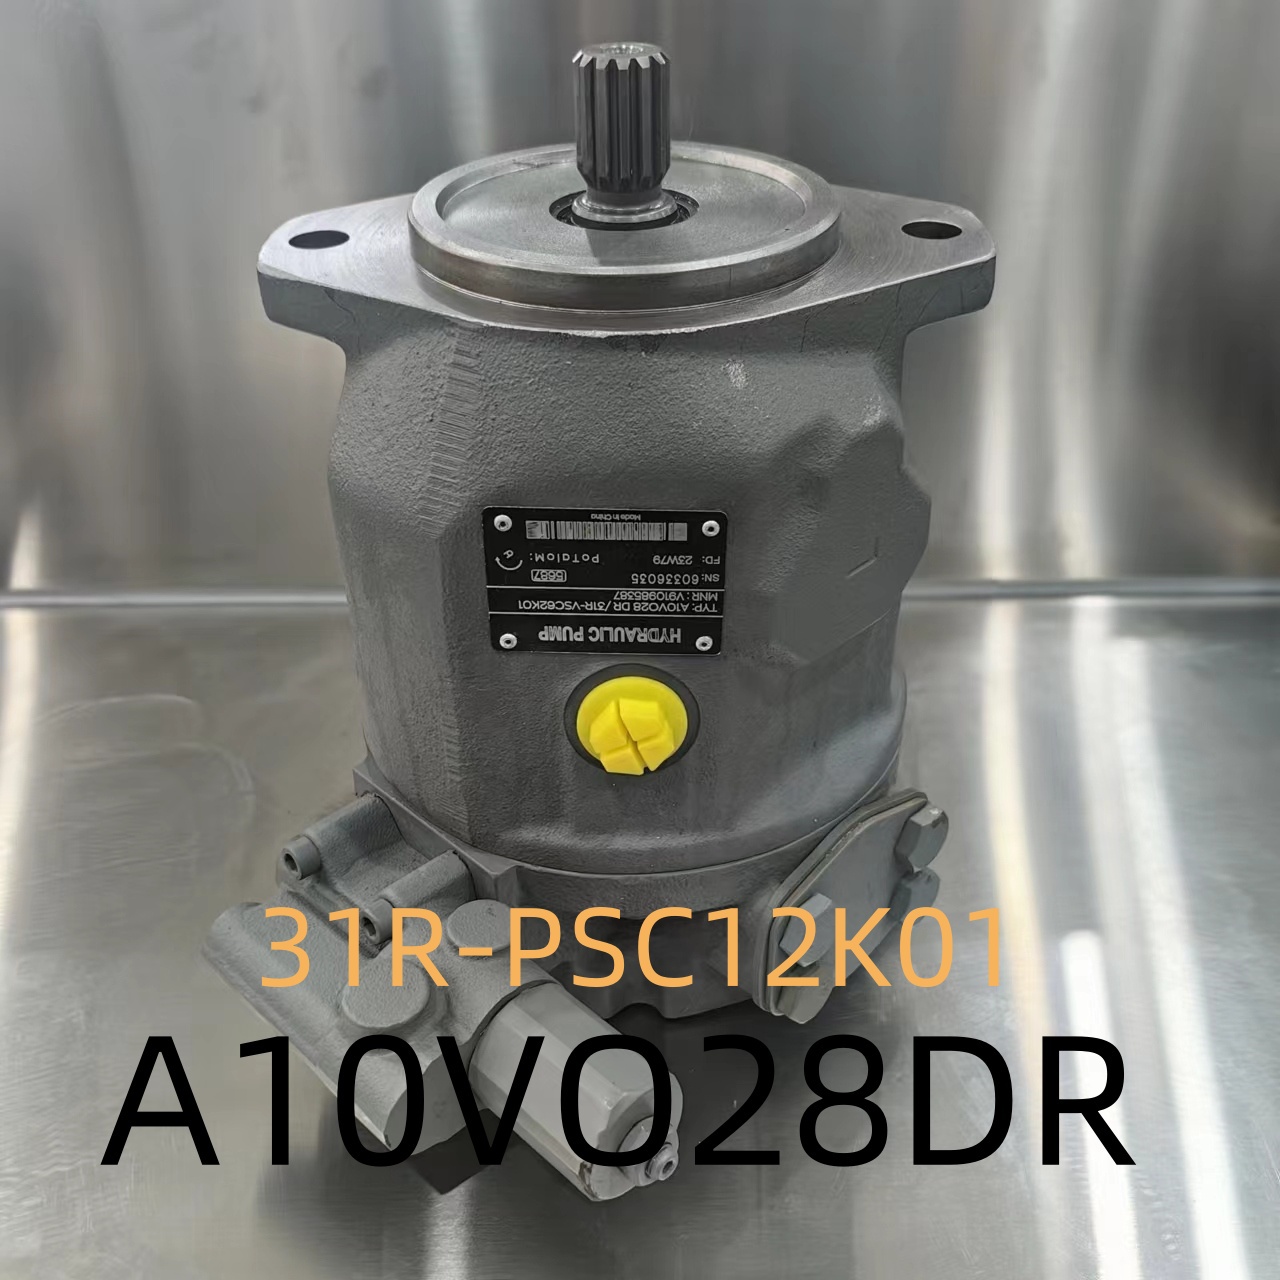 力士乐液压泵A10VO28DR/31R-PSC12K01柱塞泵